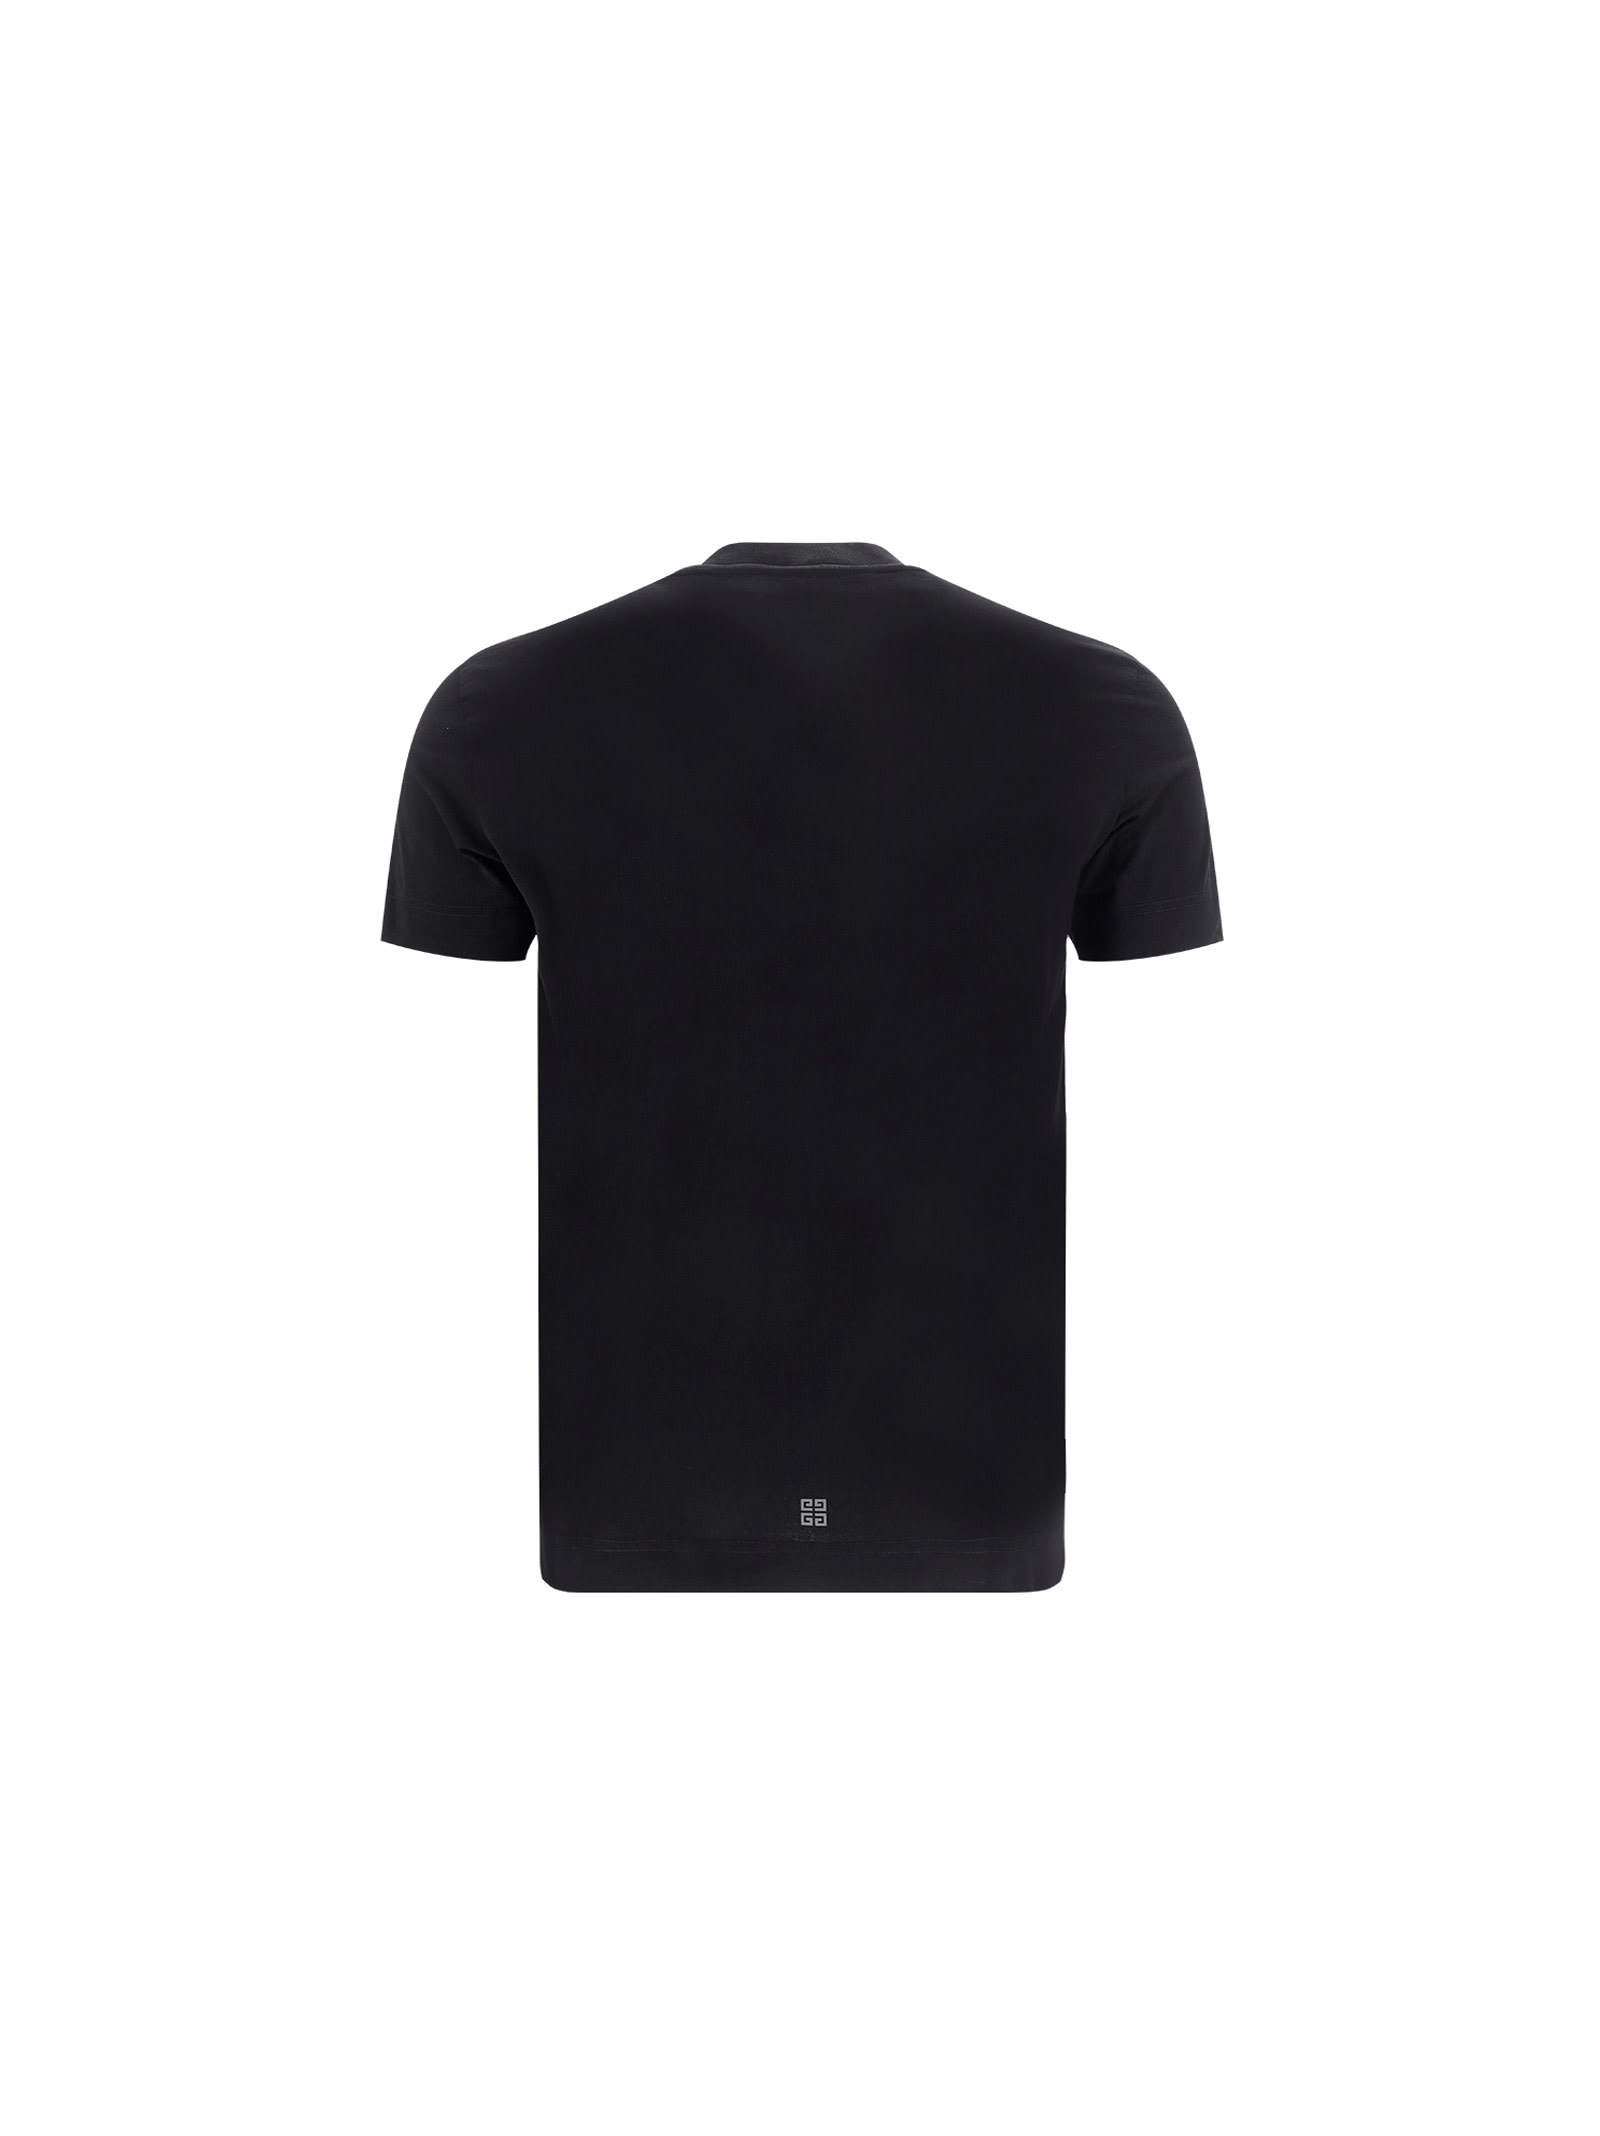 驚きの価格 LUGGAGE ORIGINAL SO T-SHIRT 2021 BLACK Tシャツ ...